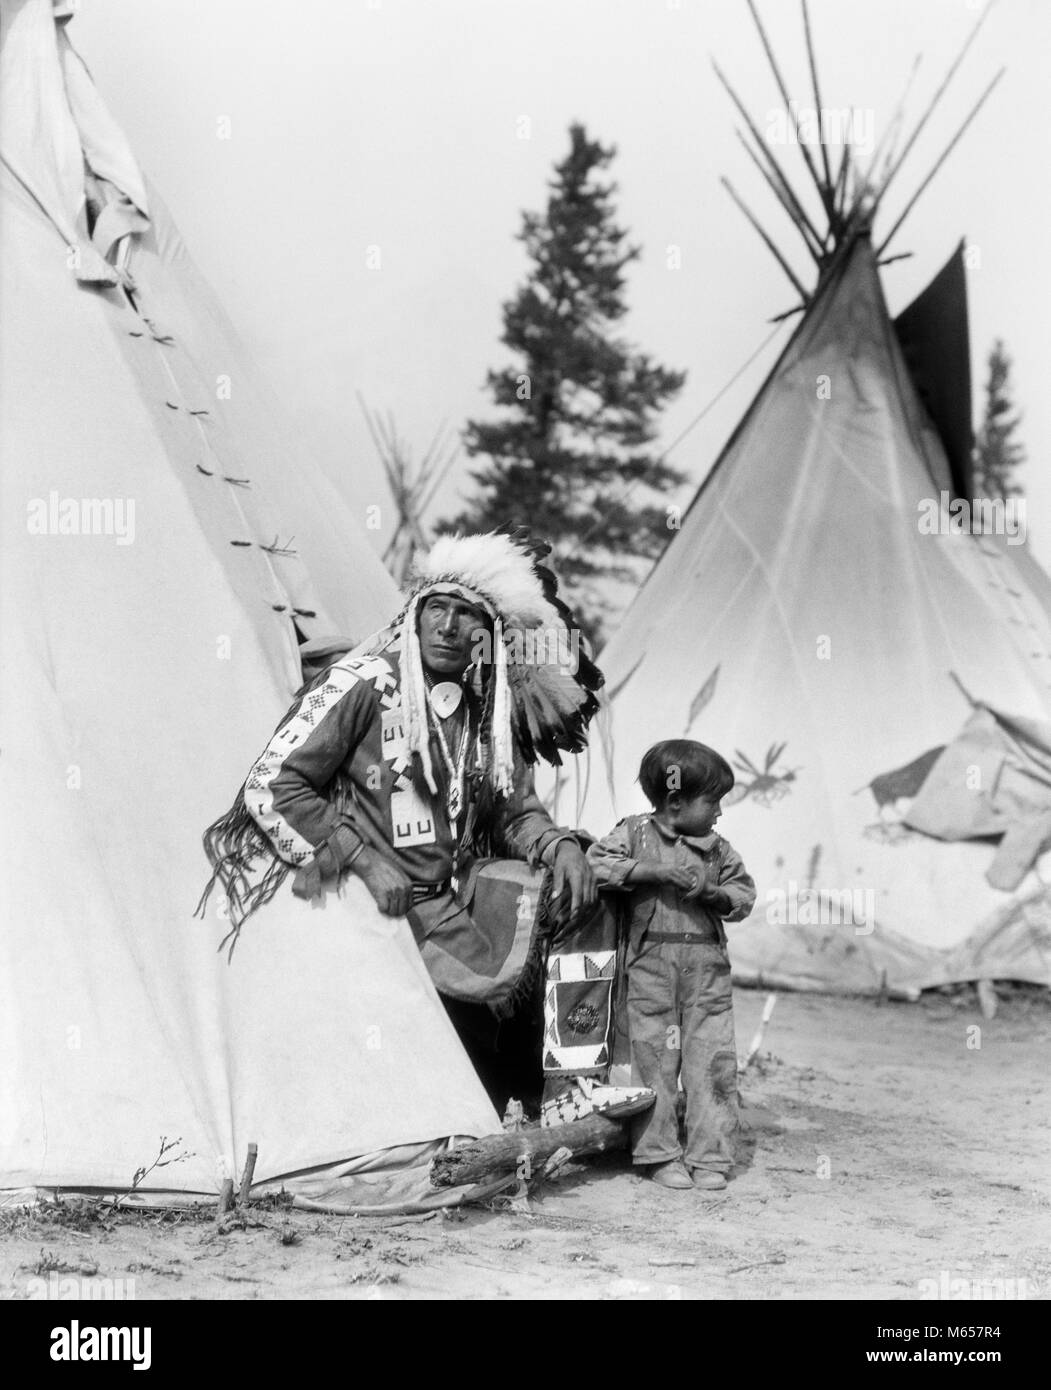 1920 Native American Indian MANN CHIEF SITZEN ADLER UND JUNGE IM EINGANG TEPEE STONEY Stamm von Banff Alberta Kanada - ich 525 HAR 001 HARS LÄNDLICHEN LEBEN ZU HAUSE ADLER KOPIE RAUM FREUNDSCHAFT halber Länge Dorf inder Nostalgie Väter im mittleren Alter NORDAMERIKA ZWEISAMKEIT Mann im mittleren Alter 3-4 Jahre 45-50 JAHRE NORDAMERIKANISCHEN TIPI UND TIPI KANADISCHEN CHIEF VATIS FÜHRUNG STOLZ WACHSTUM VERBINDUNG ENKELKIND GROSSVÄTER TEPEE STONEY STAMM ENKEL NATIVE AMERICAN ALBERTA KONISCHE JUGENDLICHE MÄNNER INDIANER WESTERN CANADA B&W BANFF SCHWARZ UND WEISS OPA INDIGENEN ALTMODISCHE PERSONEN Stockfoto